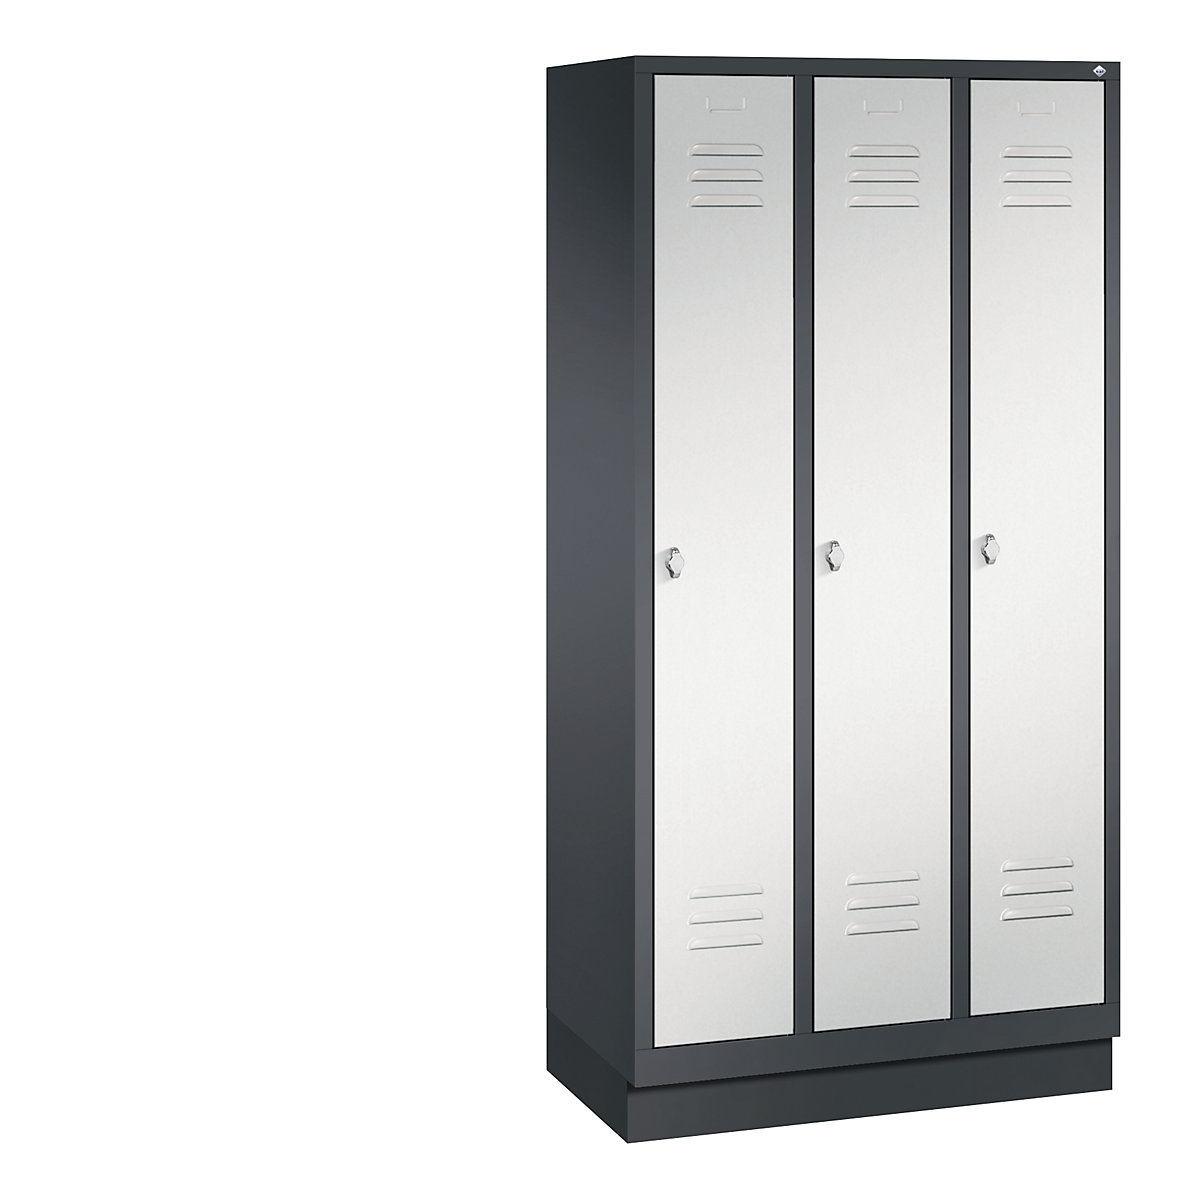 Garderobna omara CLASSIC s podnožjem – C+P, 3 predelki, širina 300 mm/predelek, črno sive / svetlo sive barve-11